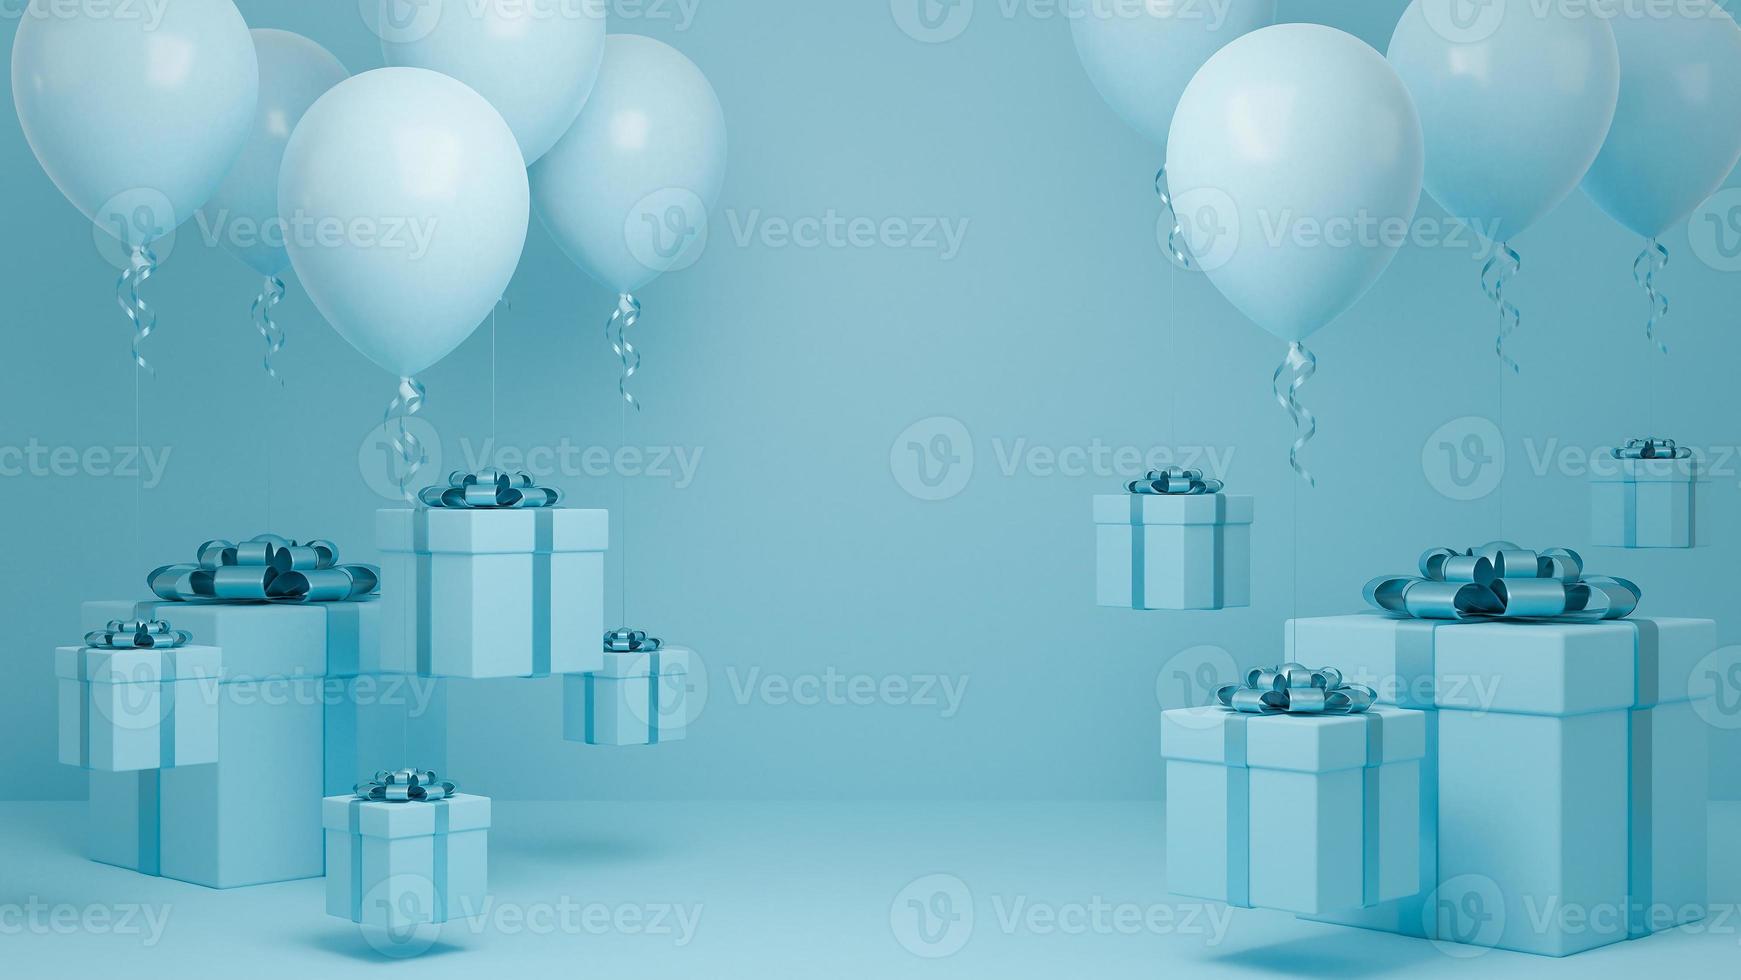 många presentask flyger i luften med ballong och blått band pastell bakgrund., jul och gott nytt år bakgrund koncept., 3D-modell och illustration. foto